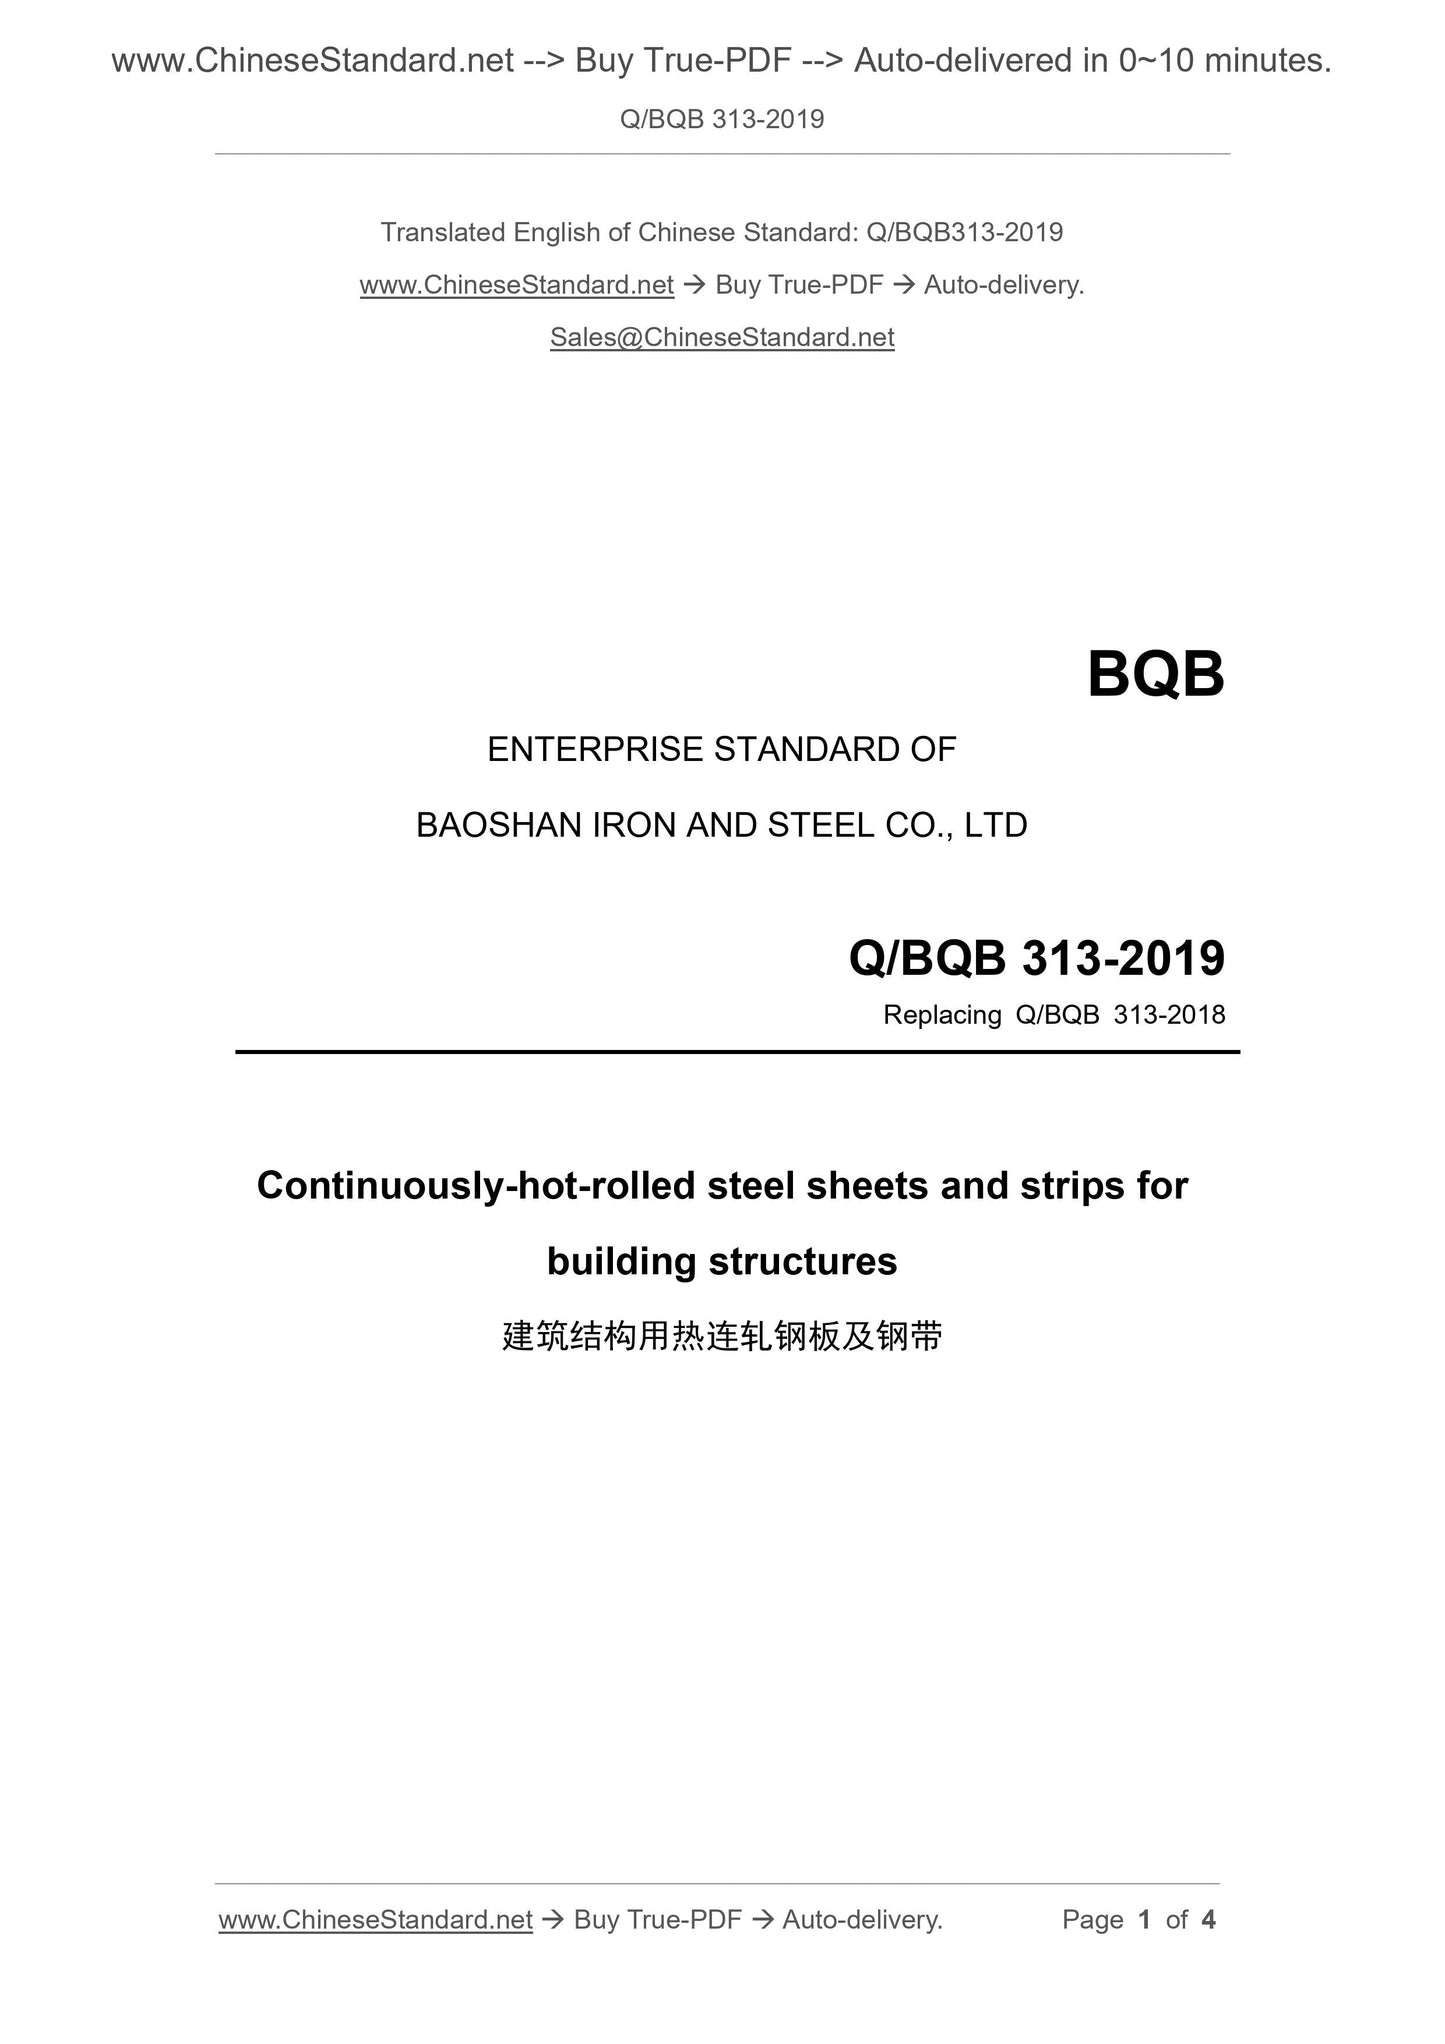 Q/BQB 313-2019 Page 1